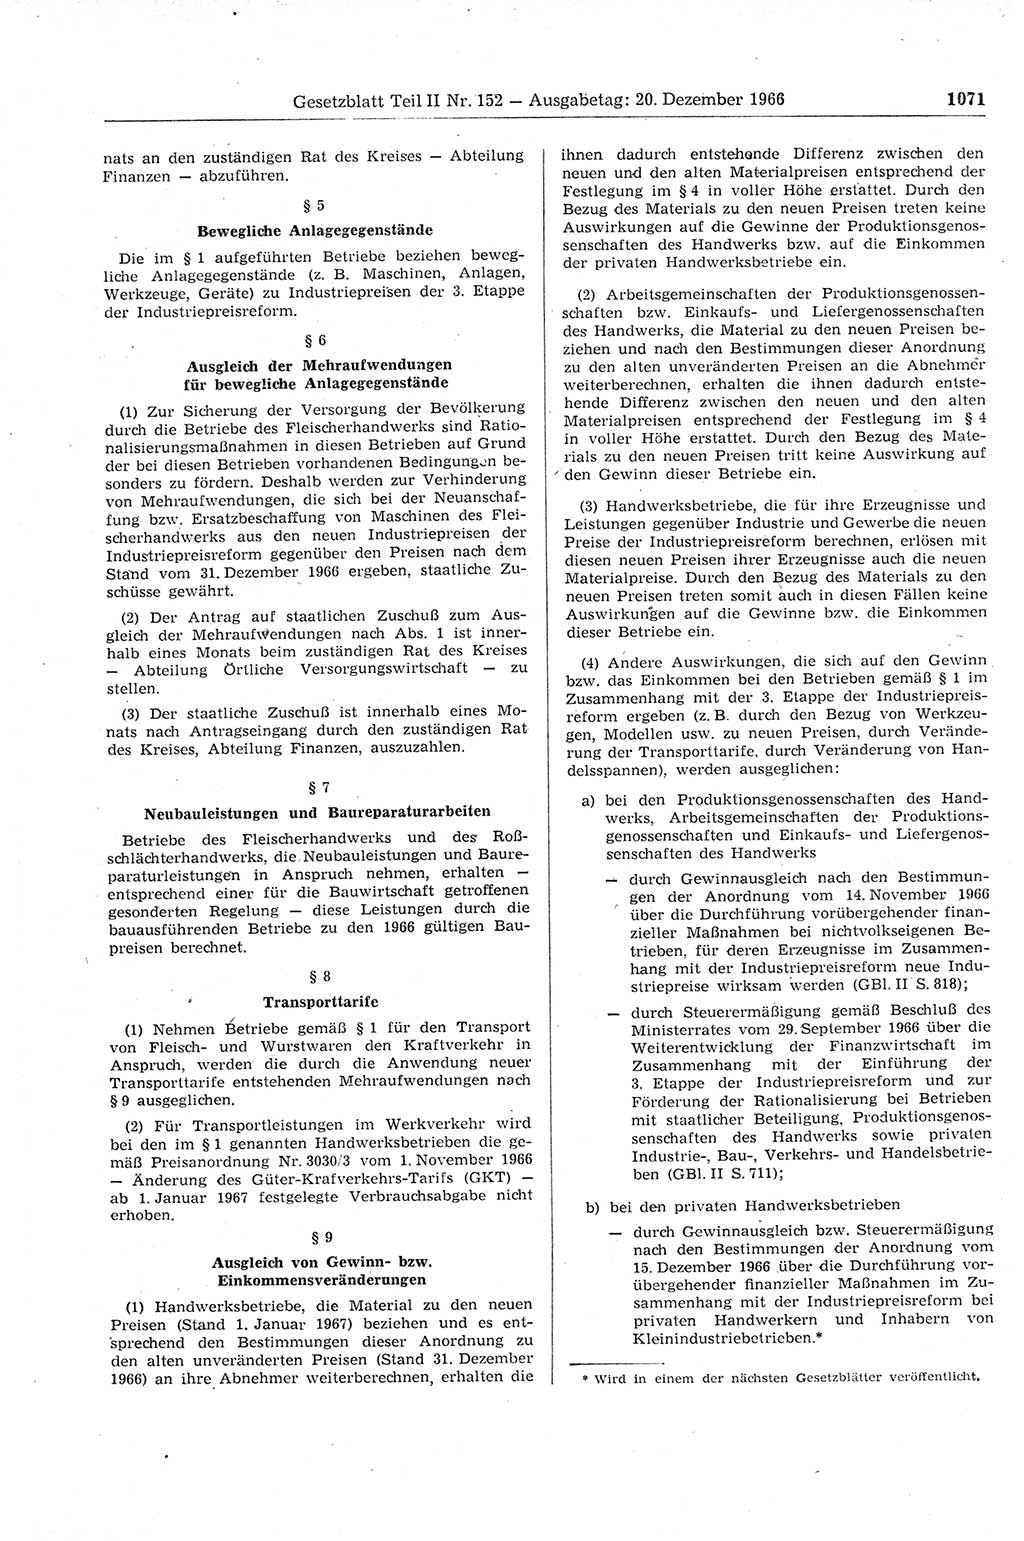 Gesetzblatt (GBl.) der Deutschen Demokratischen Republik (DDR) Teil ⅠⅠ 1966, Seite 1071 (GBl. DDR ⅠⅠ 1966, S. 1071)